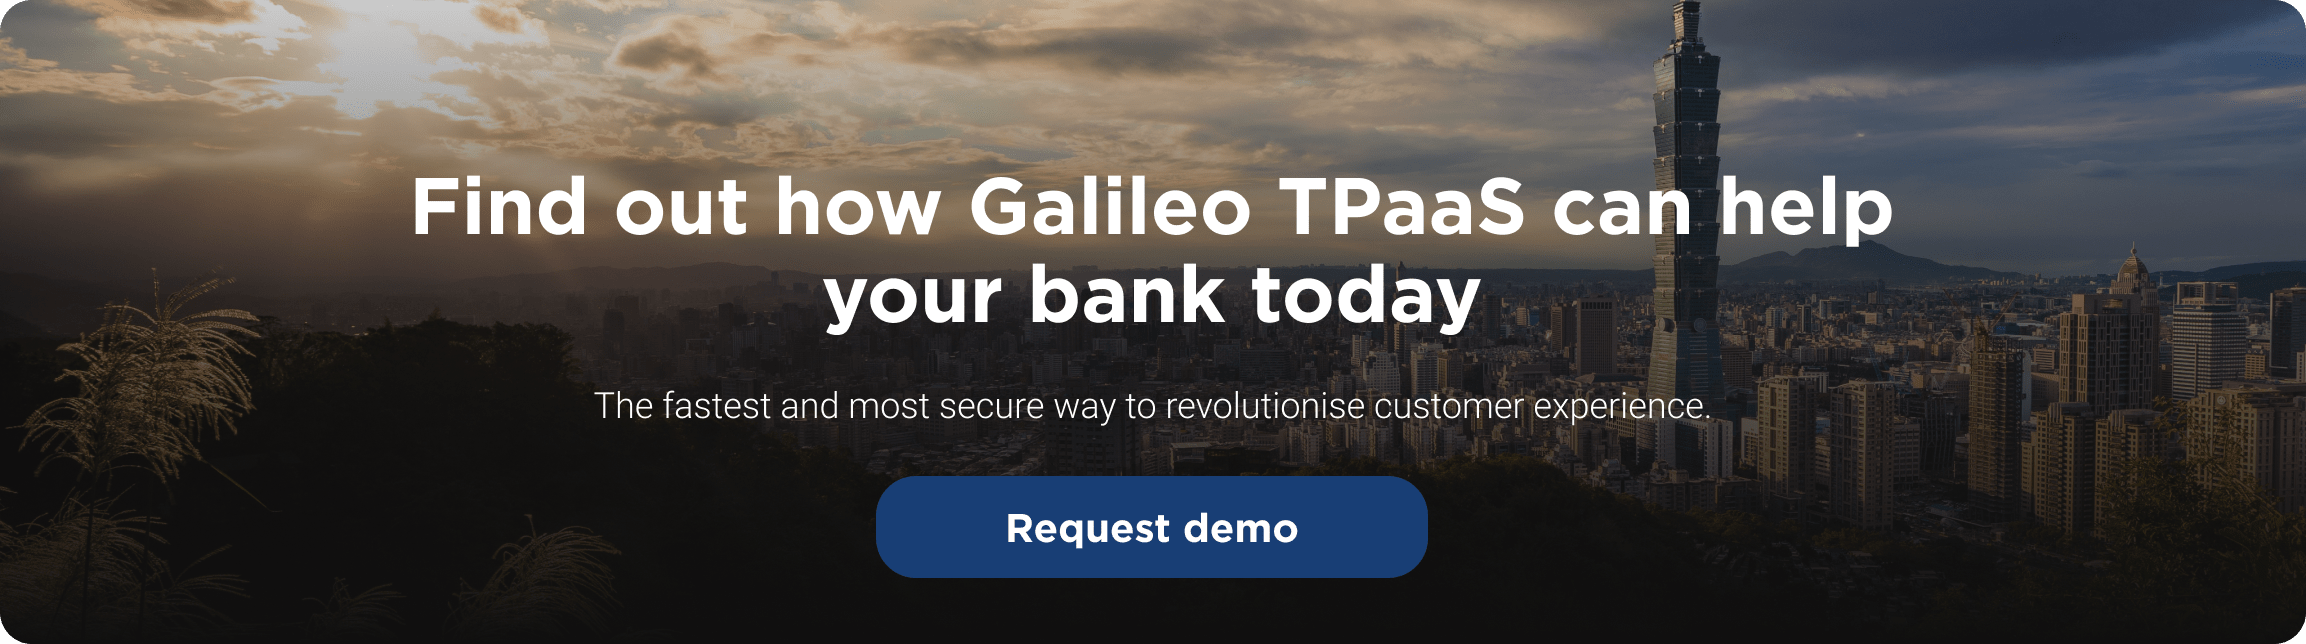 galileo-tpaas-banks-demo